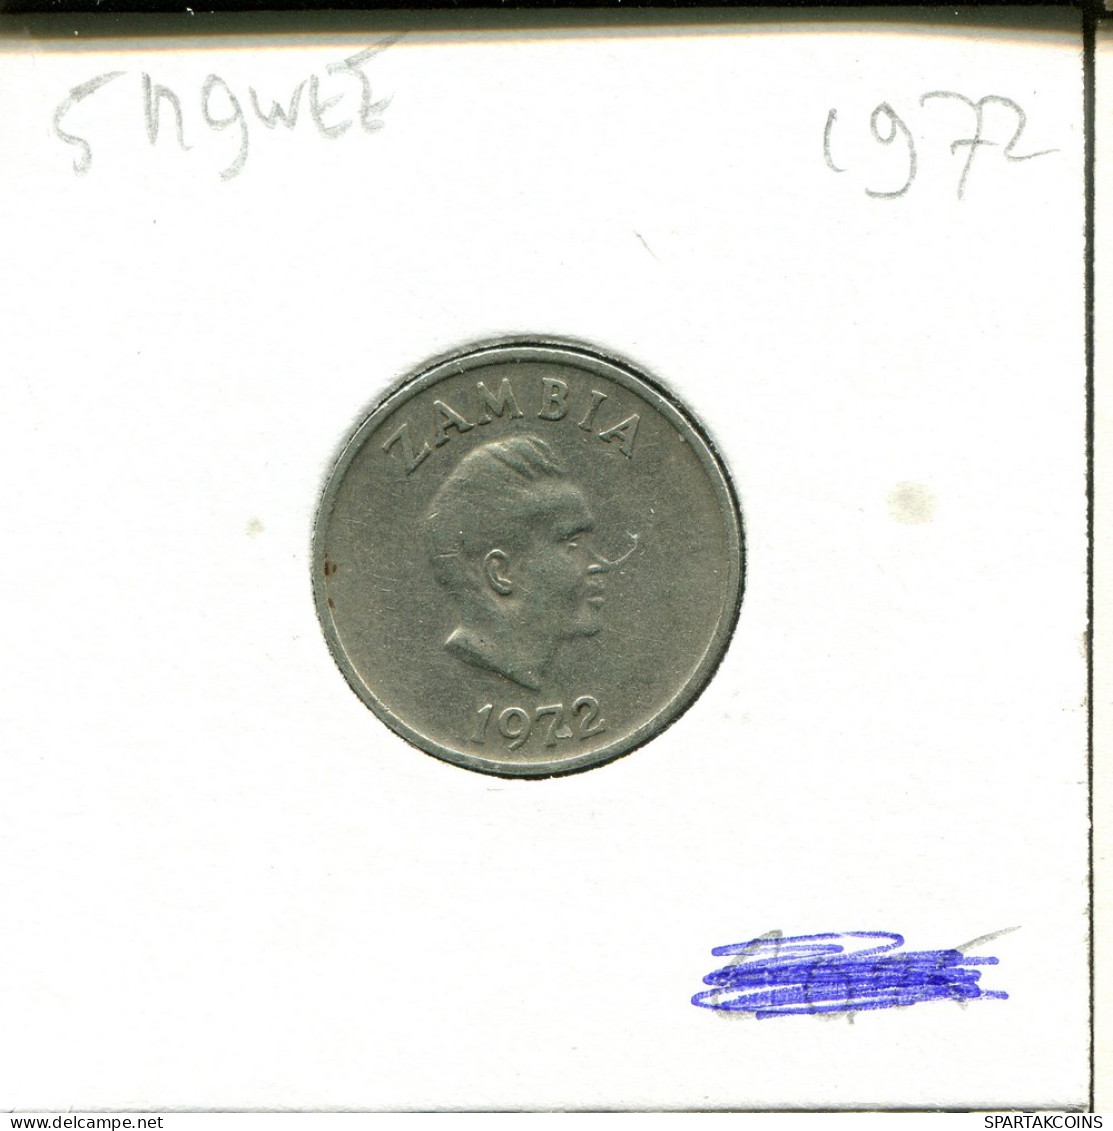 5 NGWEE 1972 ZAMBIA Moneda #AT072.E - Zambia